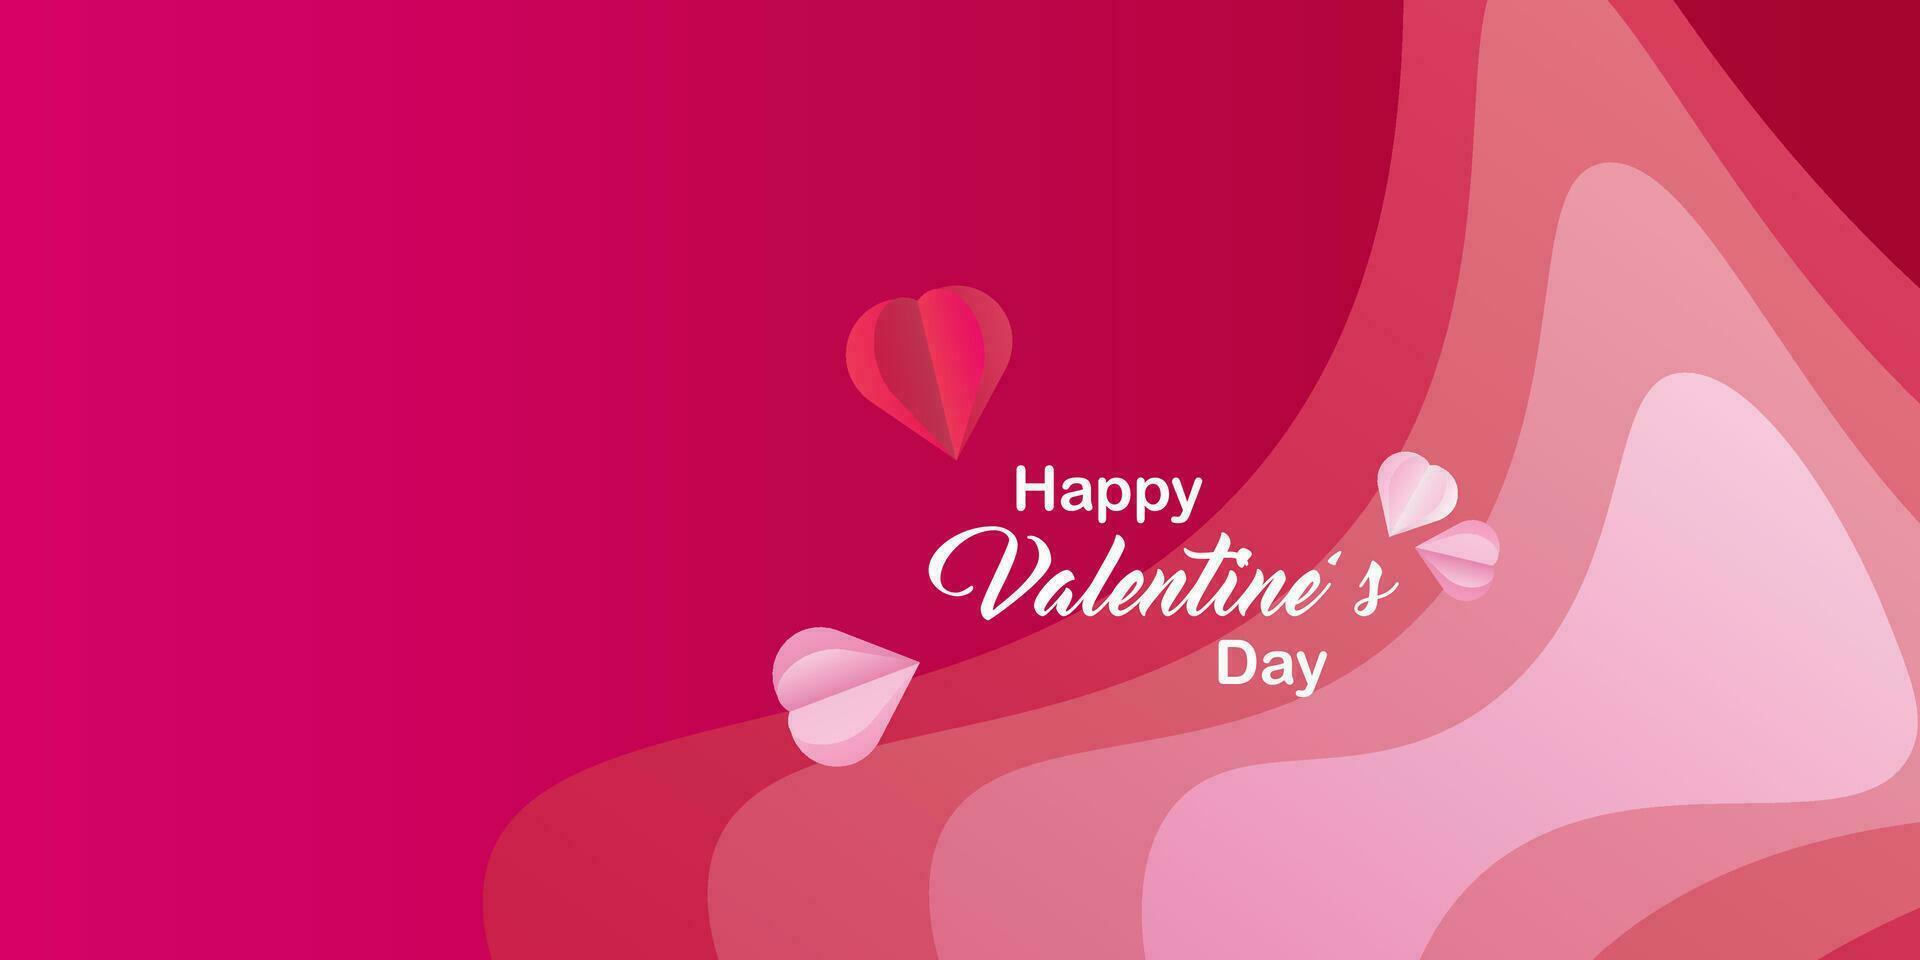 Valentijnsdag dag achtergrond met helling kleuren en harten. vector illustraties, spandoeken, flyers, uitnodigingen, affiches, brochures, korting vouchers.copyspace.